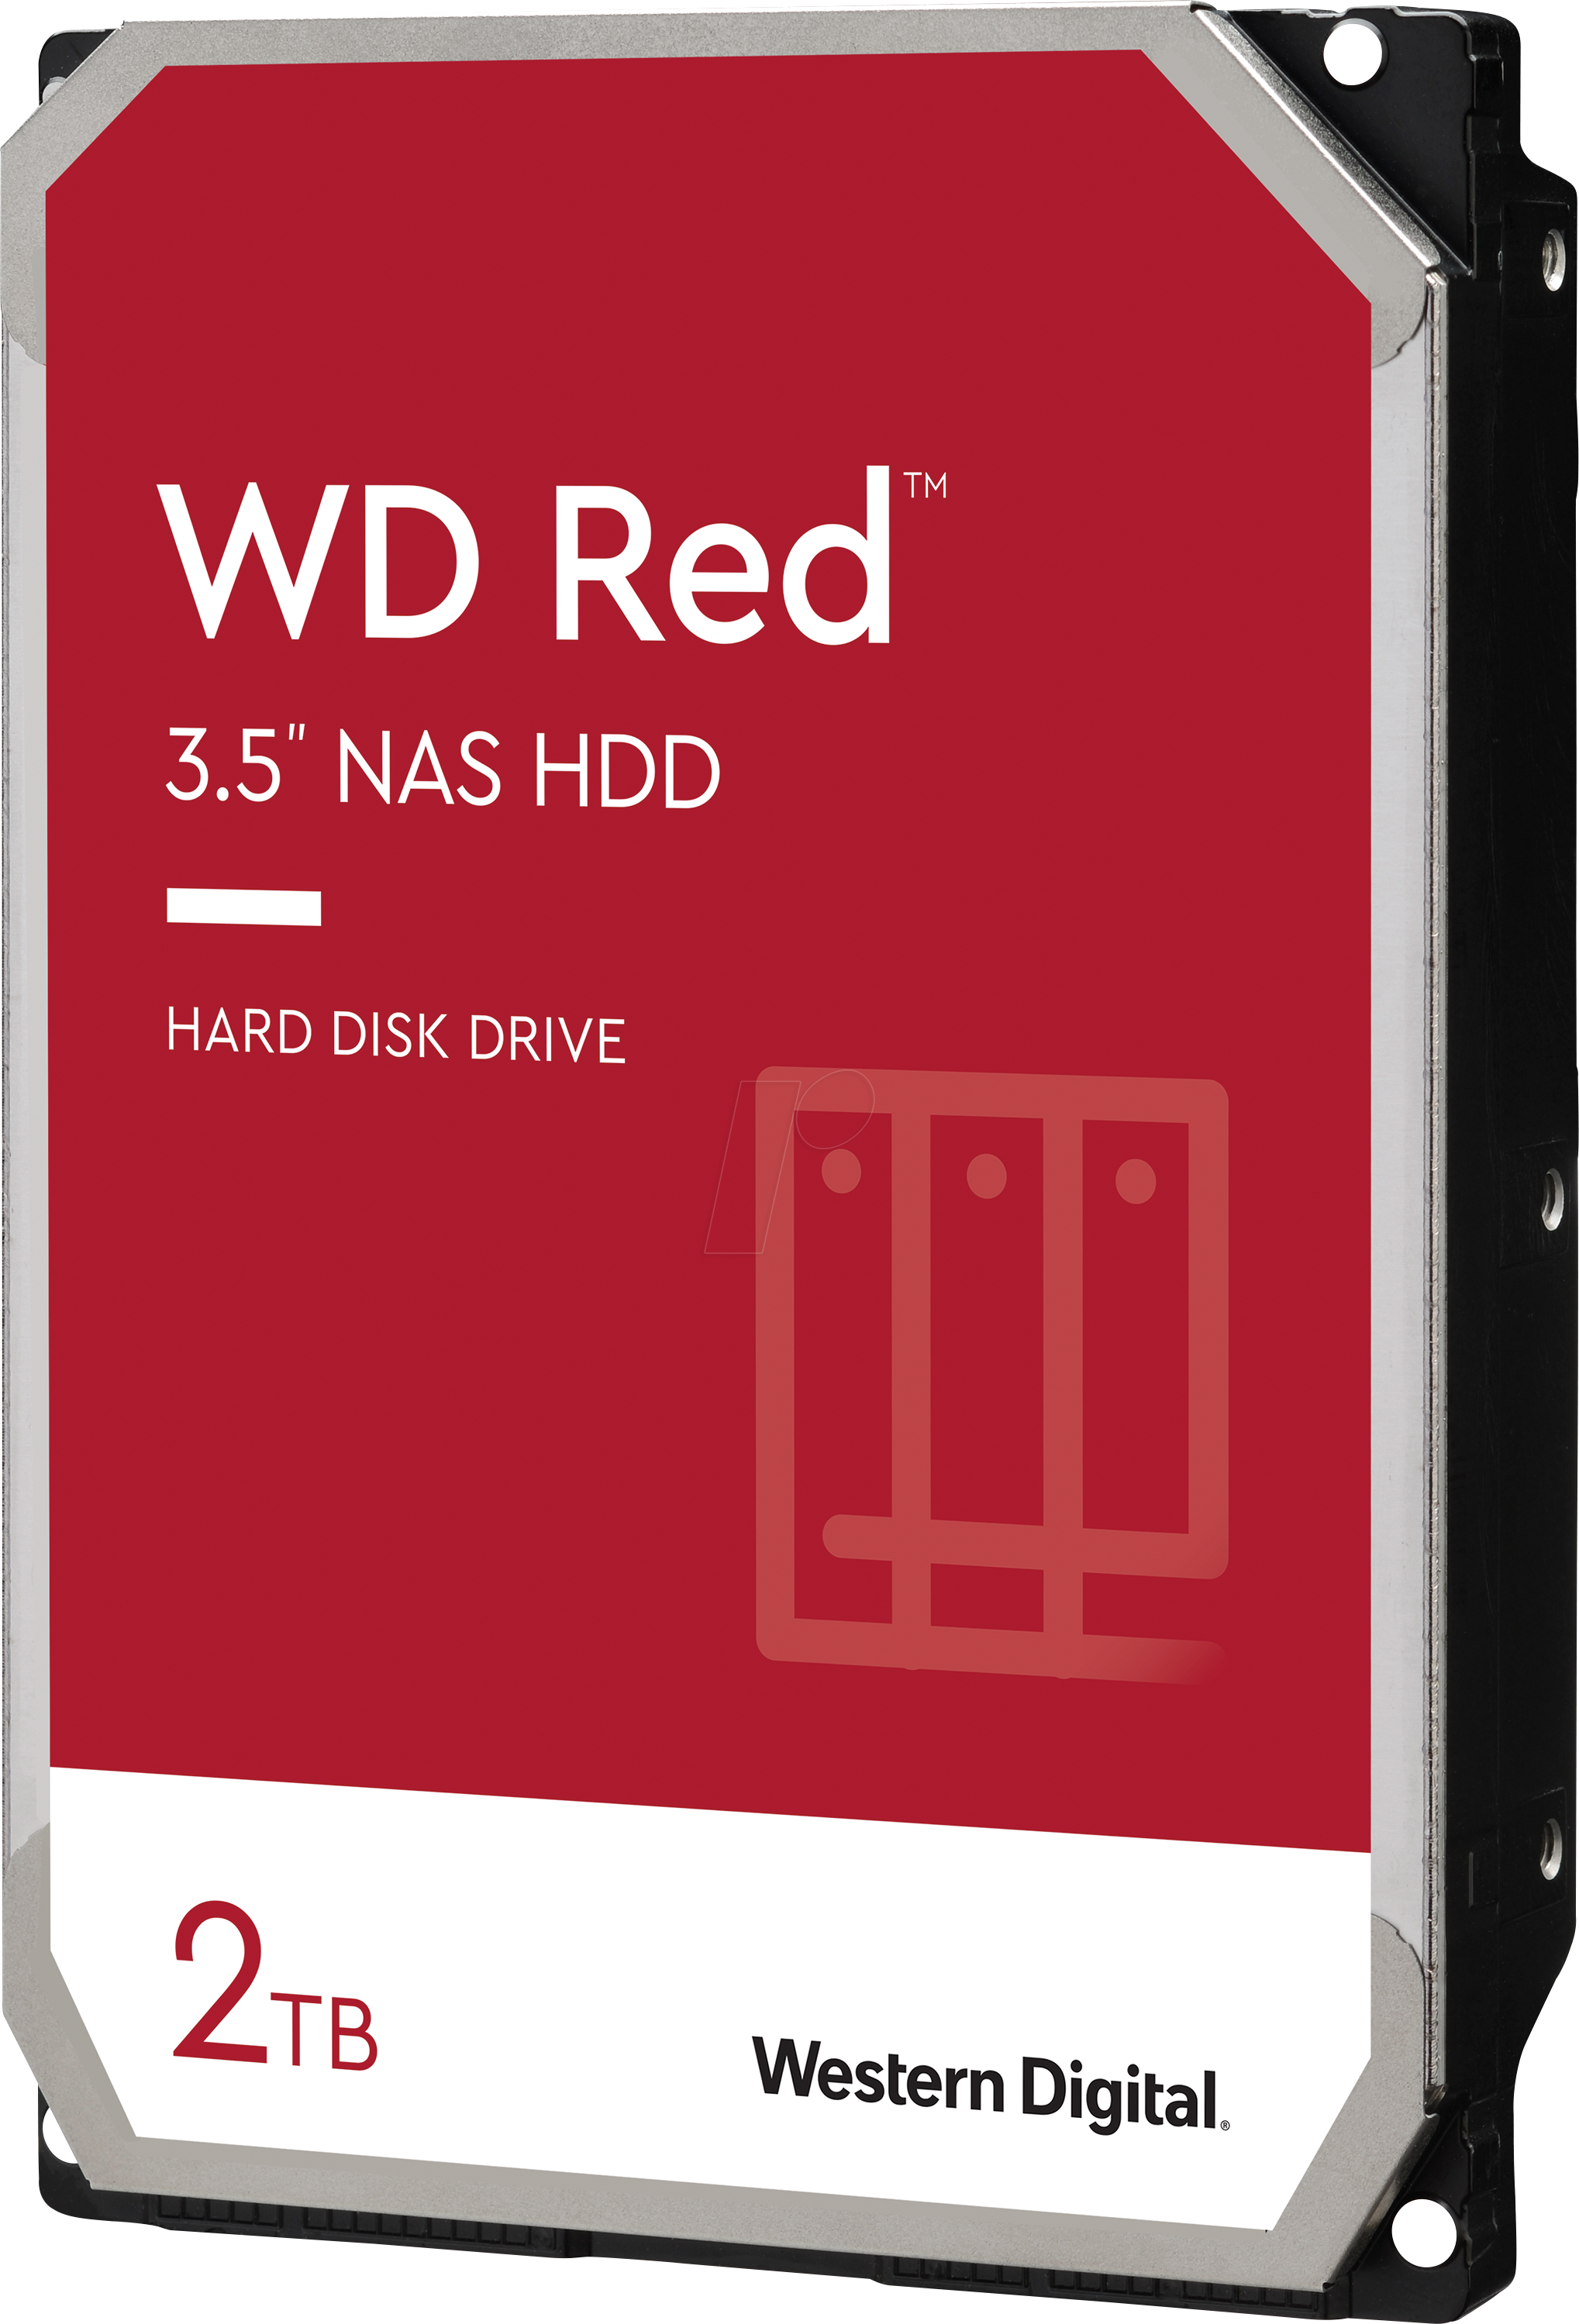 HDD 2TB Western Digital RED - Albagame